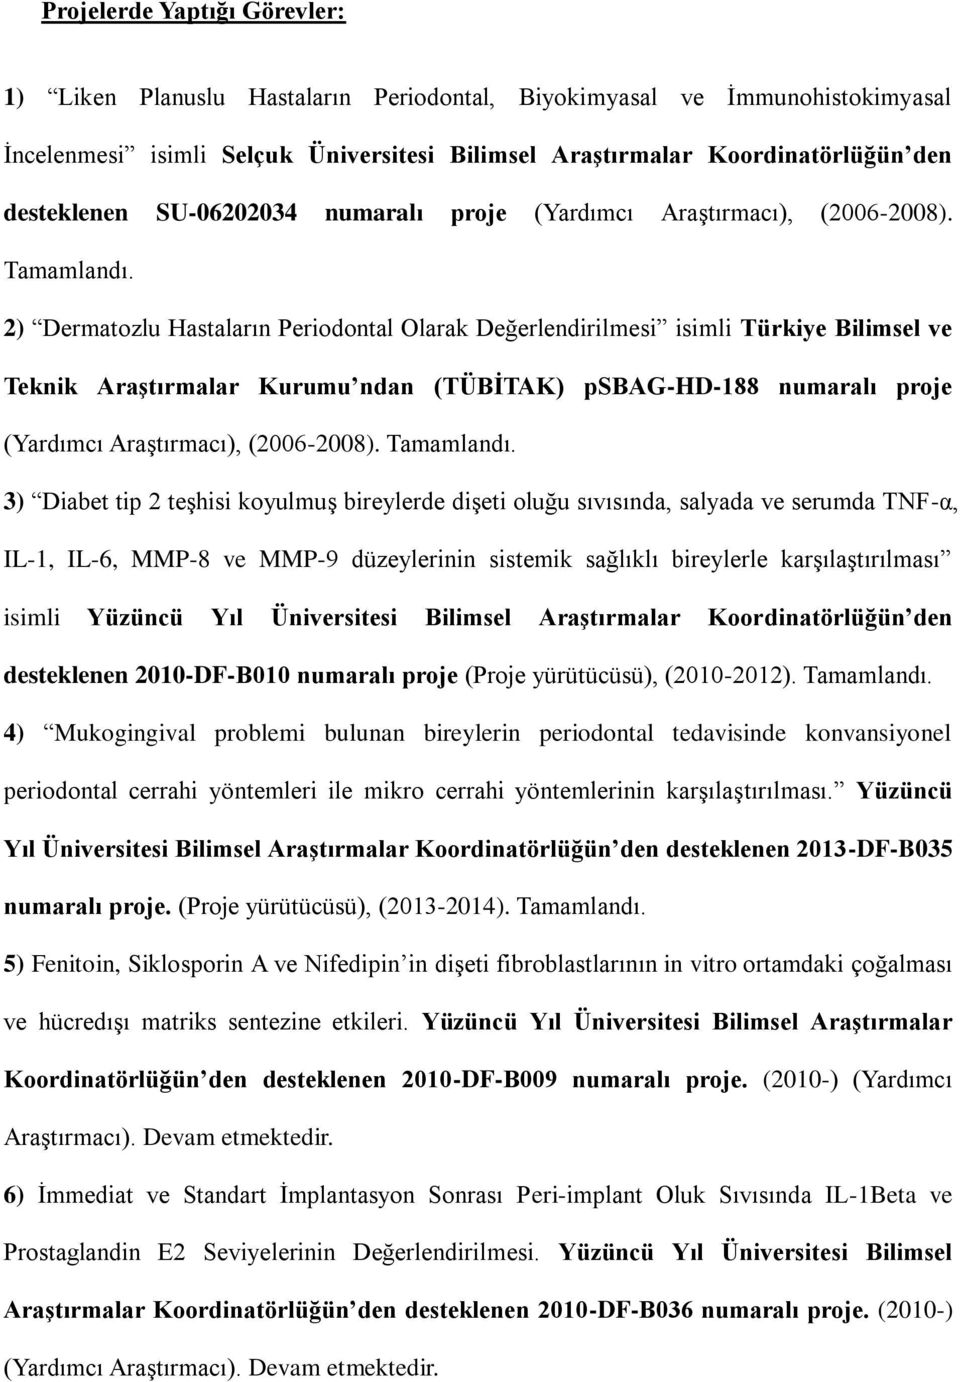 2) Dermatozlu Hastaların Periodontal Olarak Değerlendirilmesi isimli Türkiye Bilimsel ve Teknik Araştırmalar Kurumu ndan (TÜBİTAK) psbag-hd-188 numaralı proje (Yardımcı AraĢtırmacı), (2006-2008).